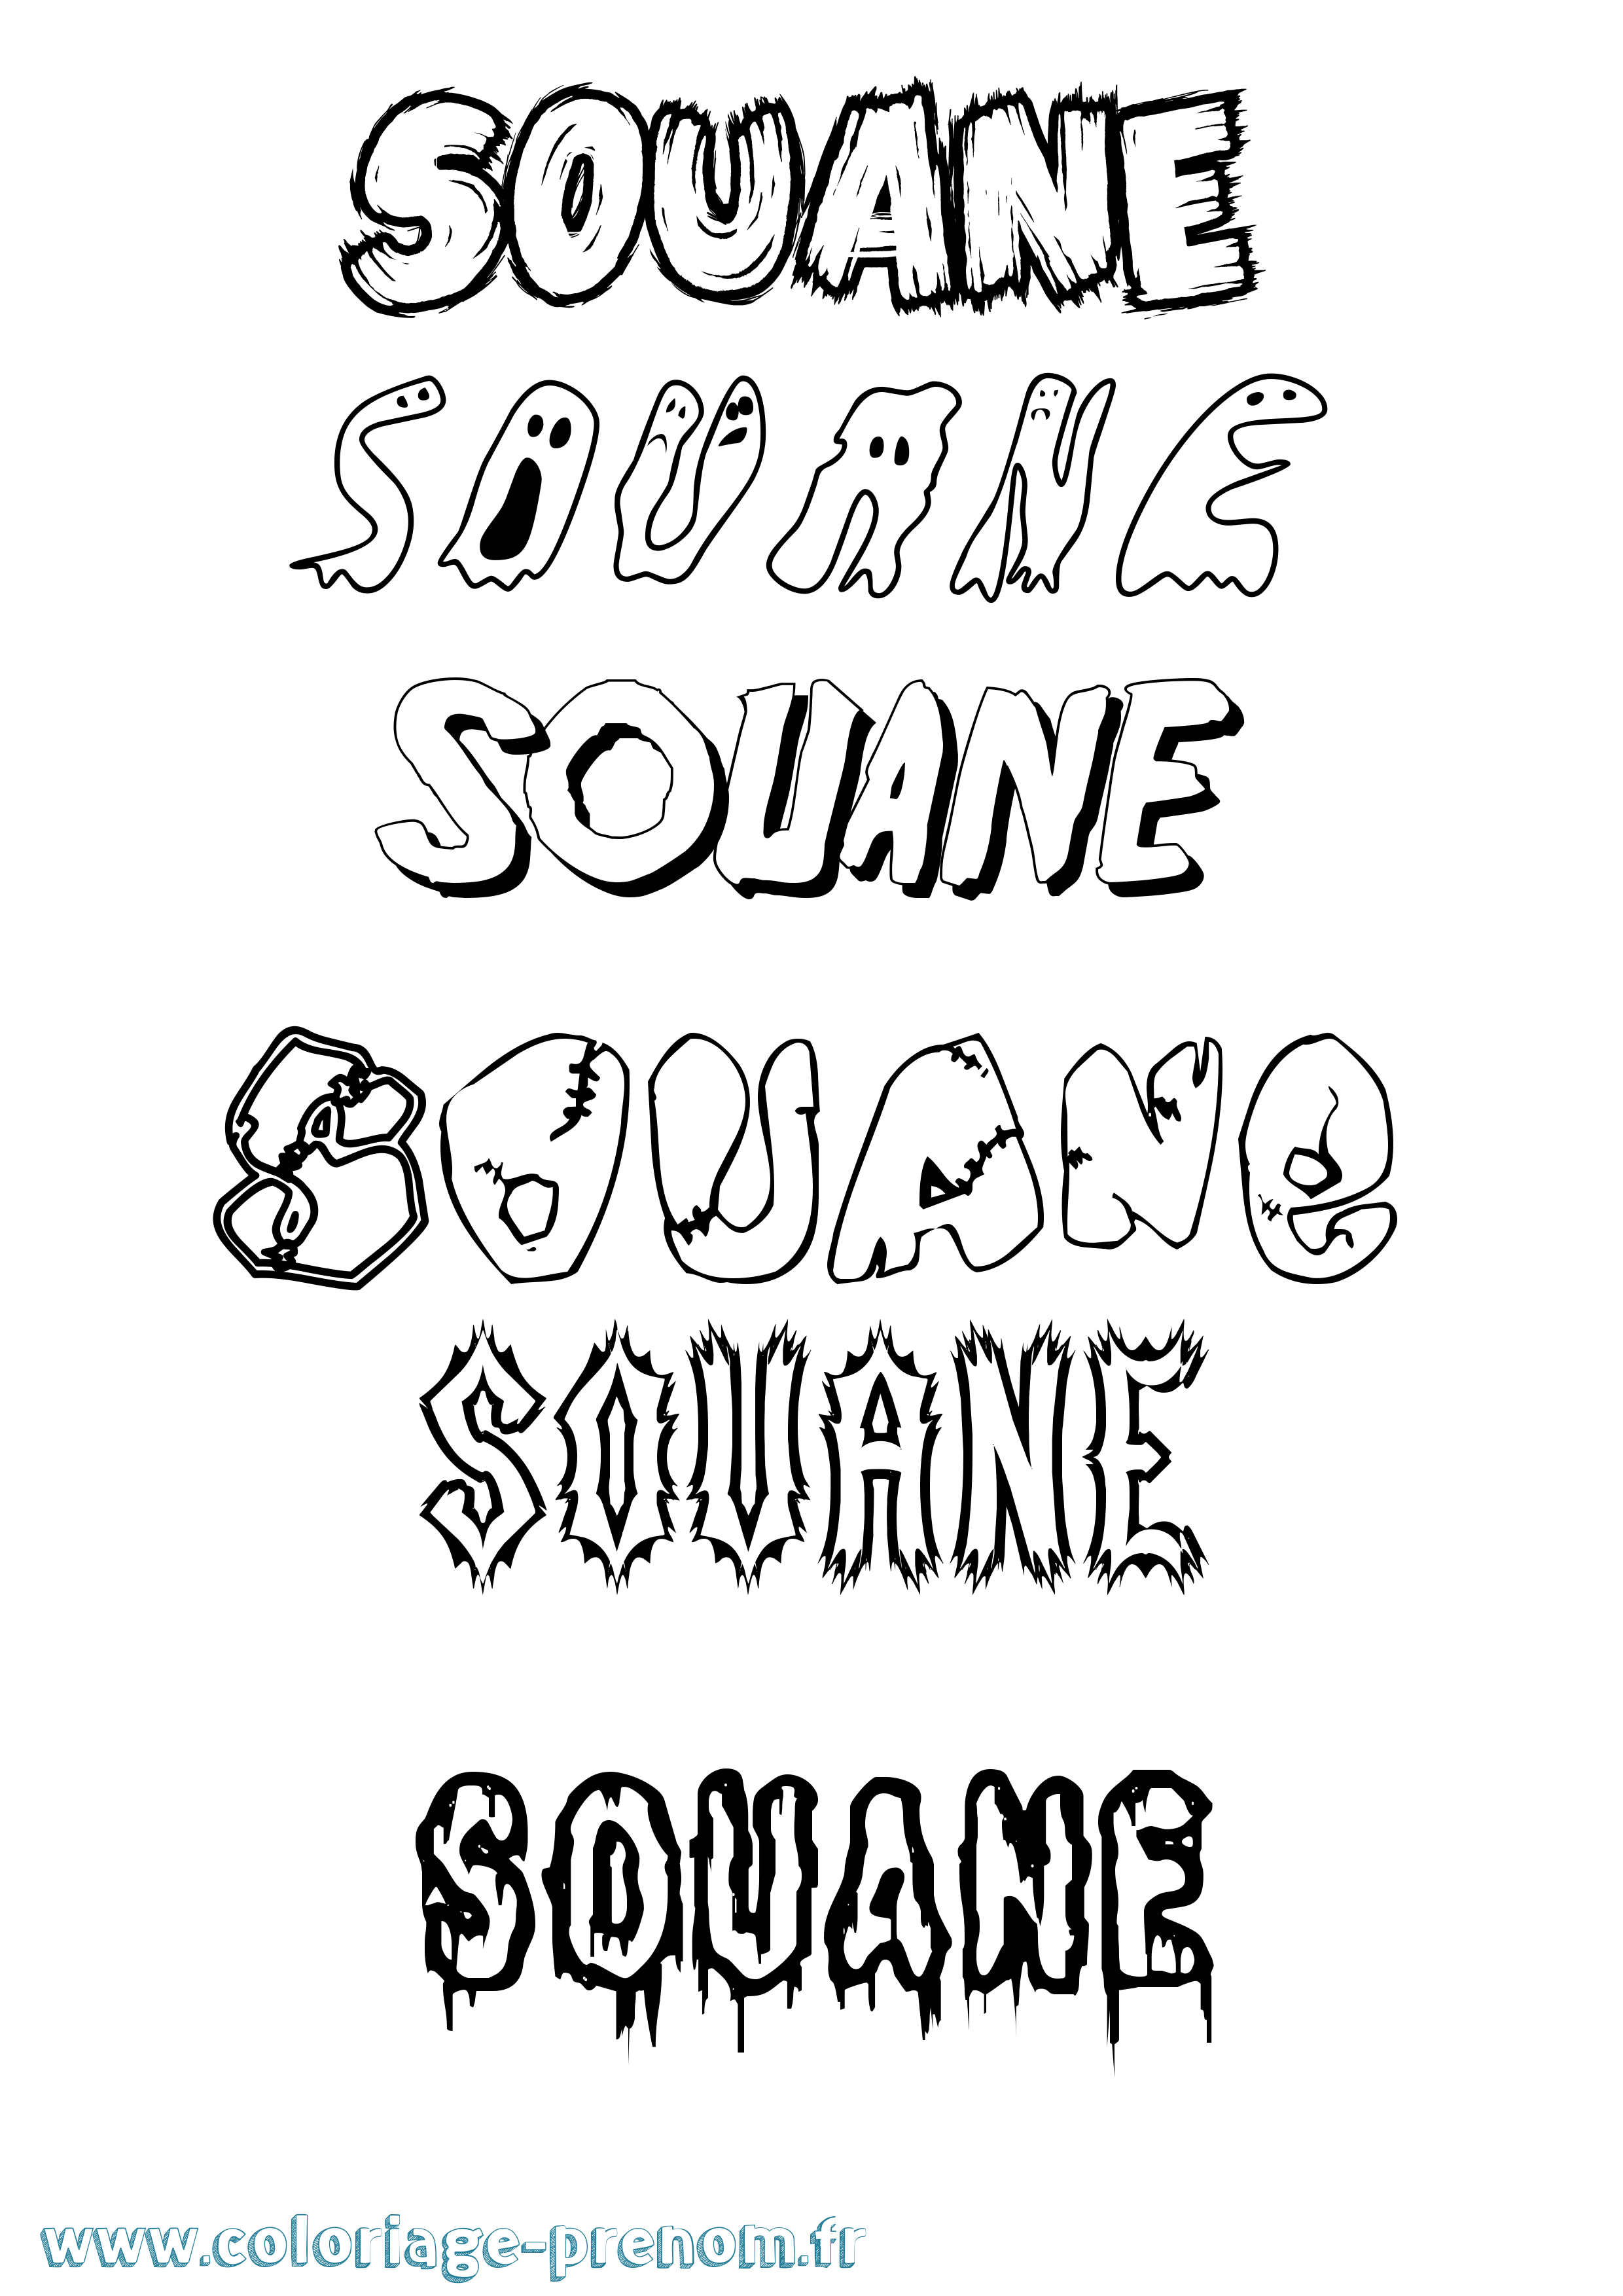 Coloriage prénom Souane Frisson